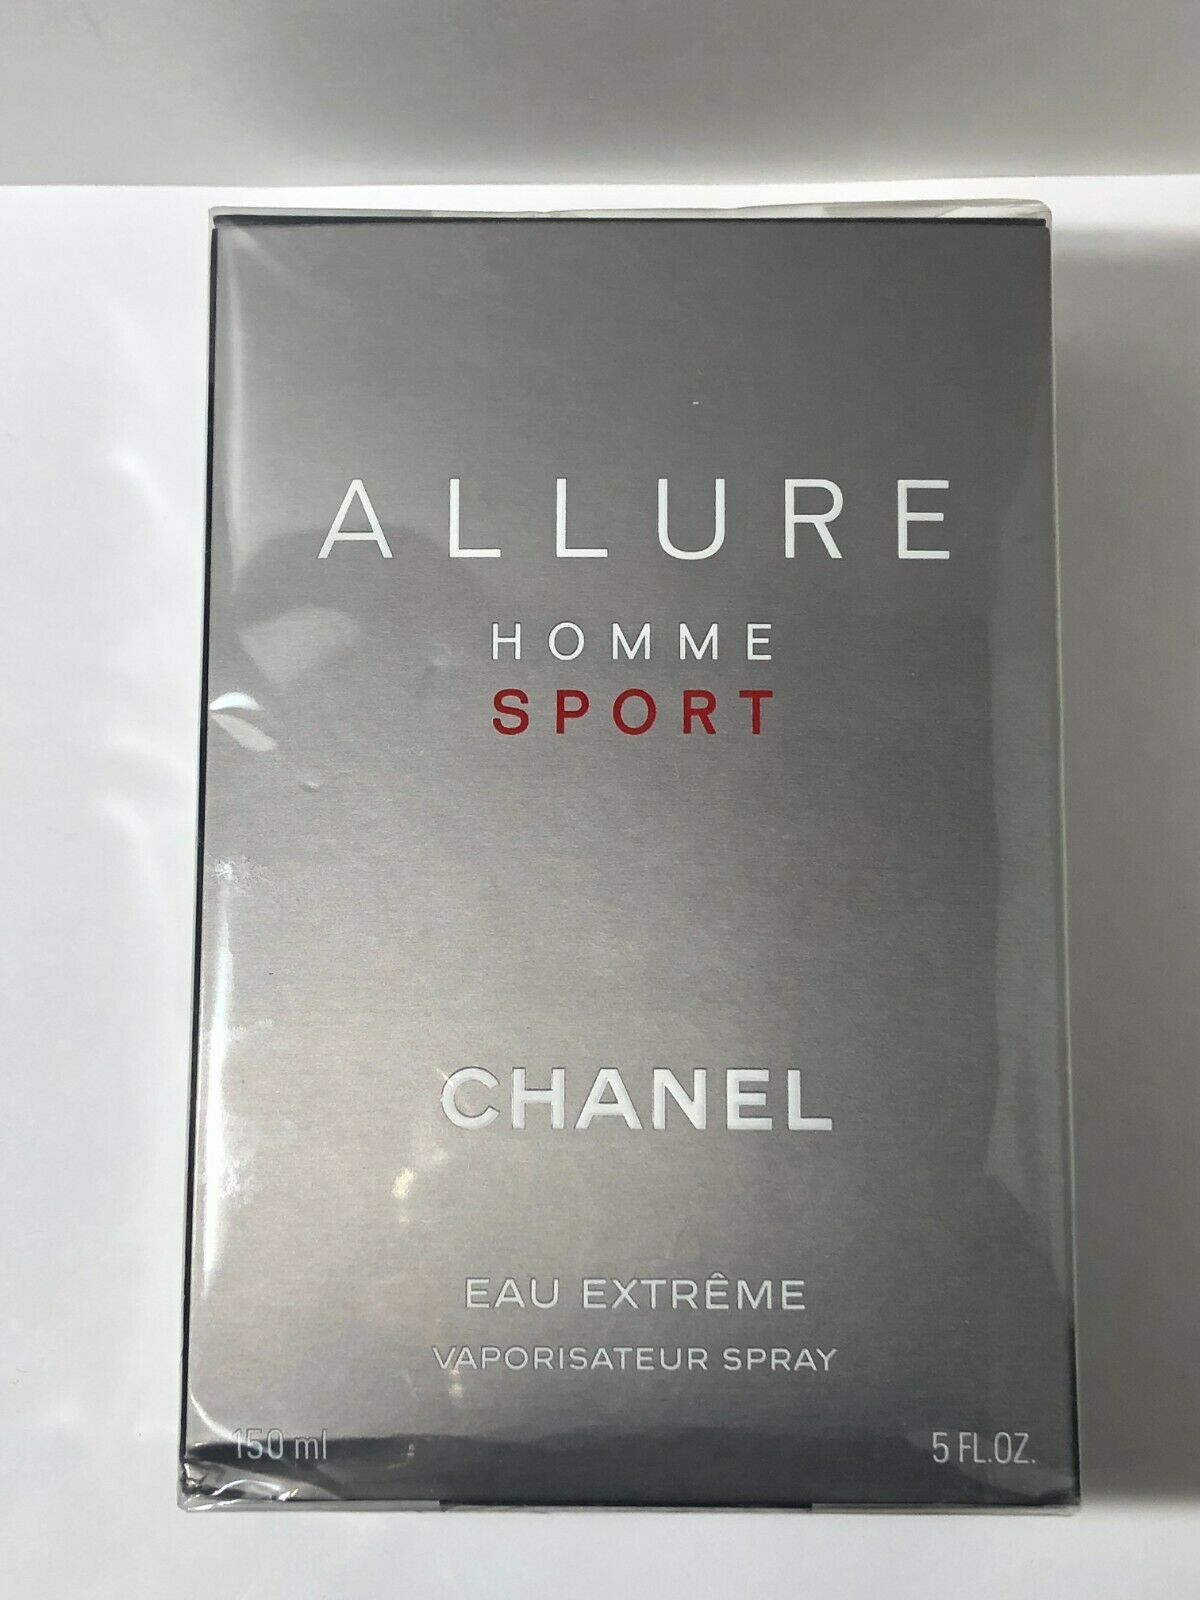 Chanel allure homme sport eau extreme 5.0 oz cologne